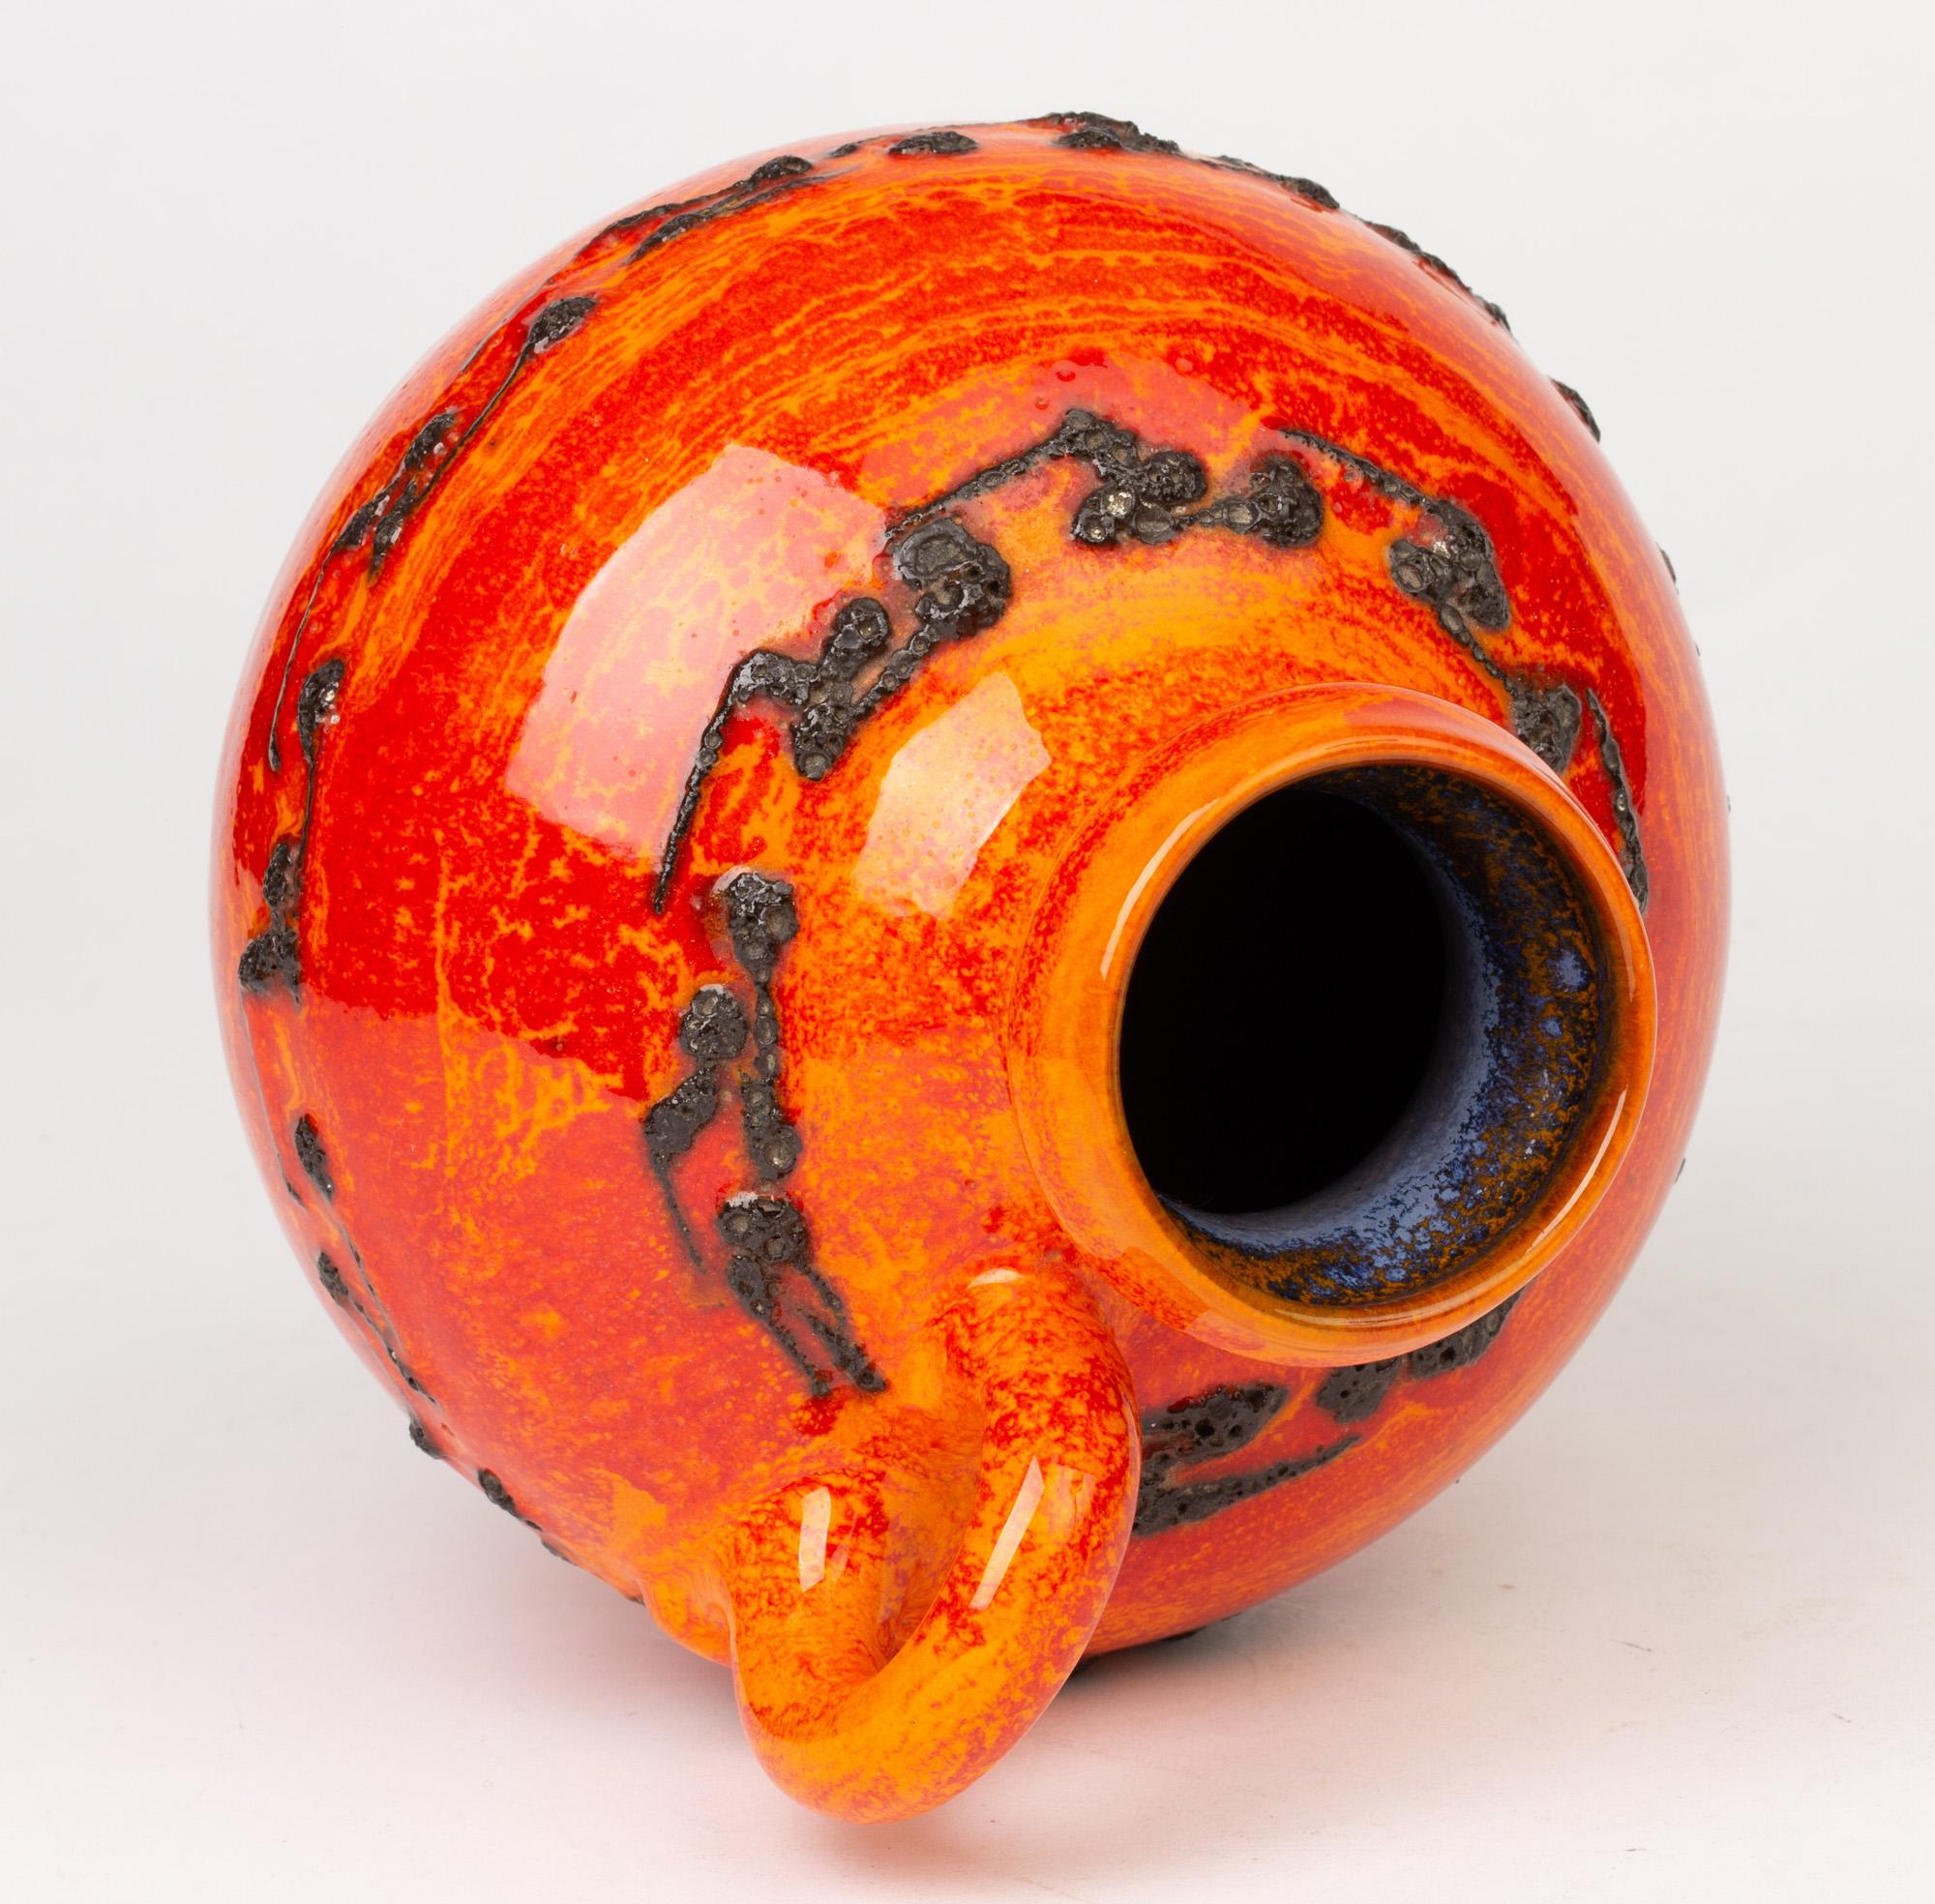 Un étonnant vase à anse en poterie d'art allemande du milieu du siècle, décoré de glaçures rouges/oranges vibrantes avec des motifs de lave noire par Kreutz Keramik. Le vase en poterie repose sur un pied étroit et arrondi, avec un corps de forme